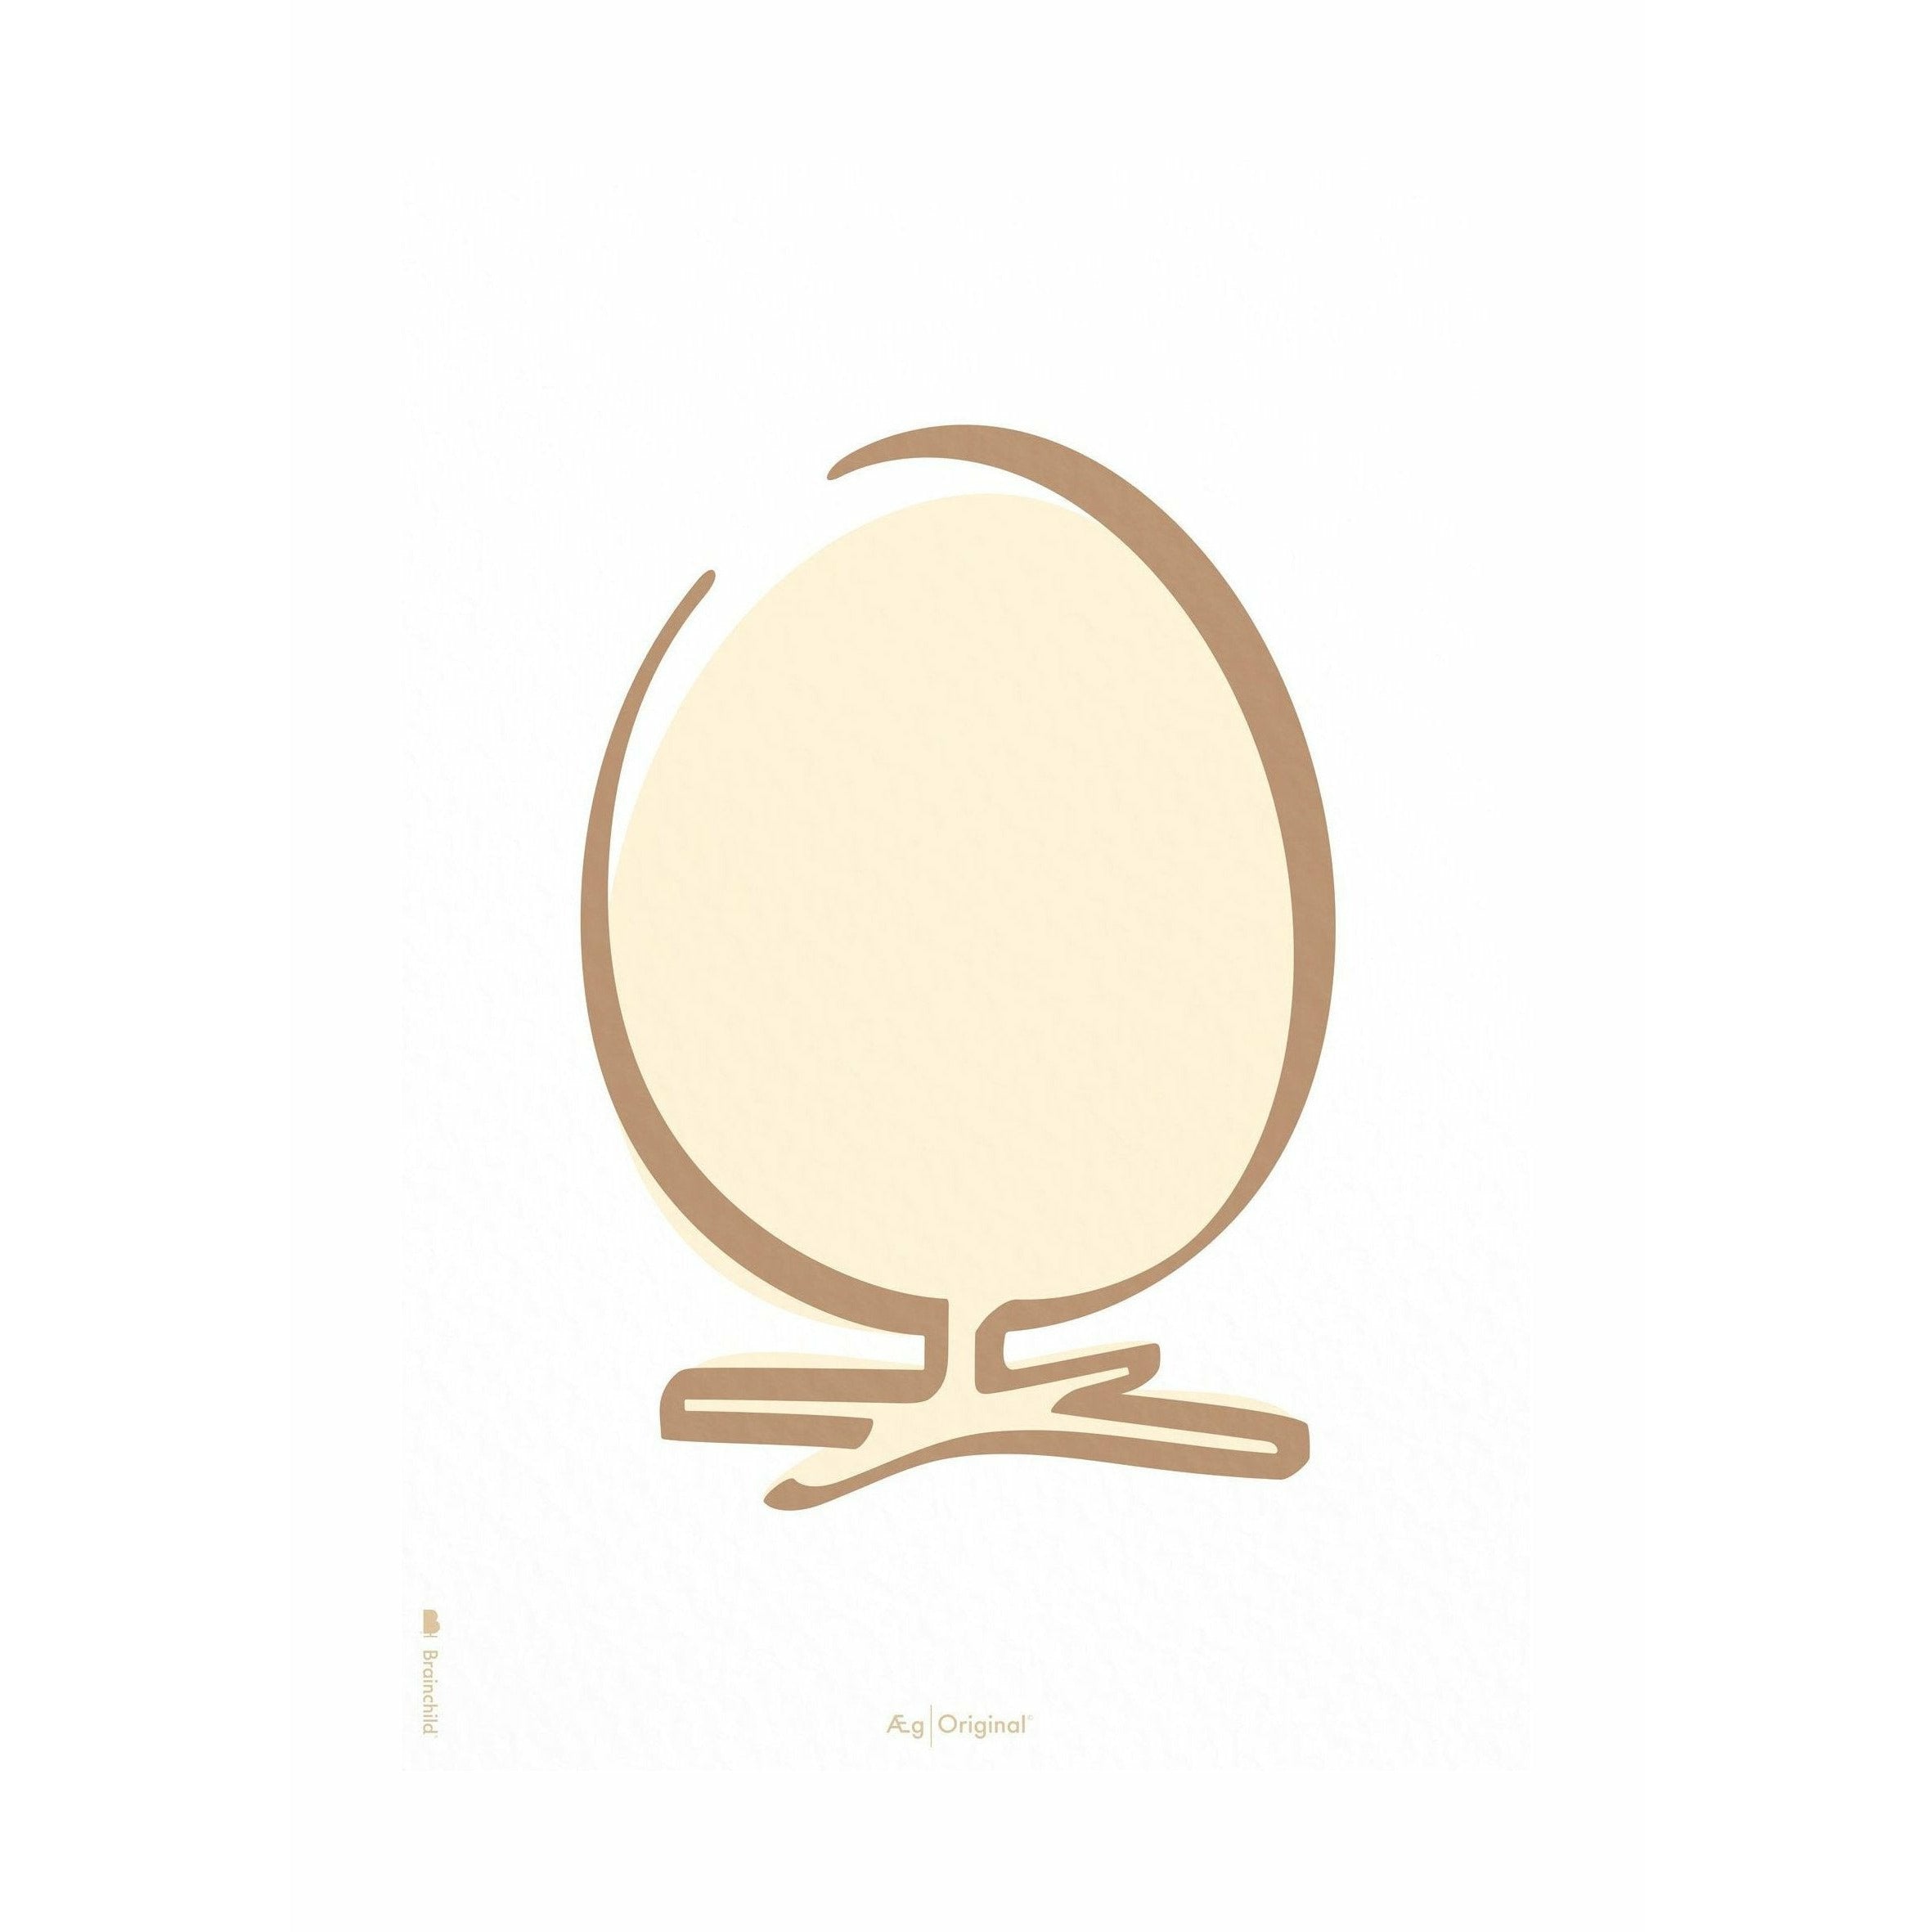 Póster de línea de huevo de precisión sin marco 70 x100 cm, fondo blanco